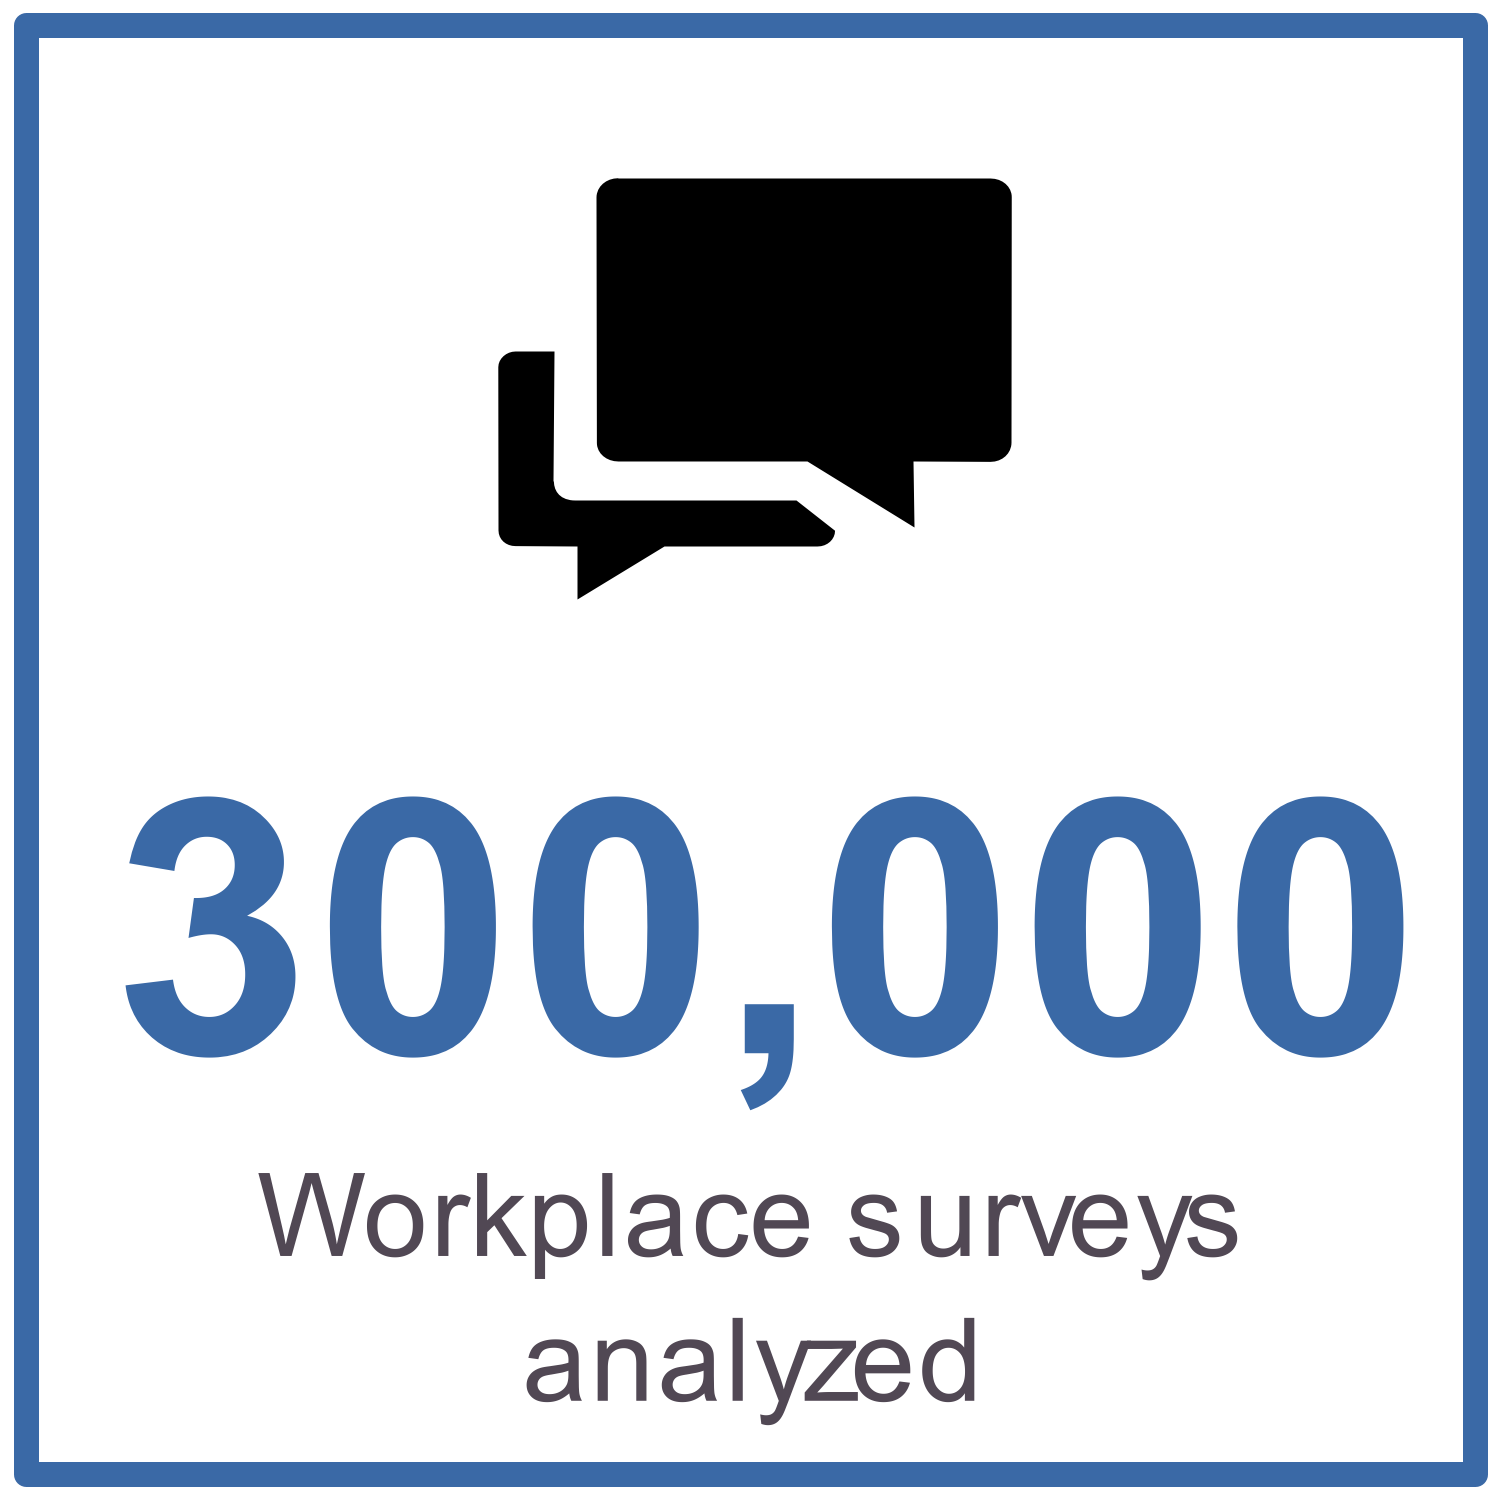 300,000 workplace surveys analyzed